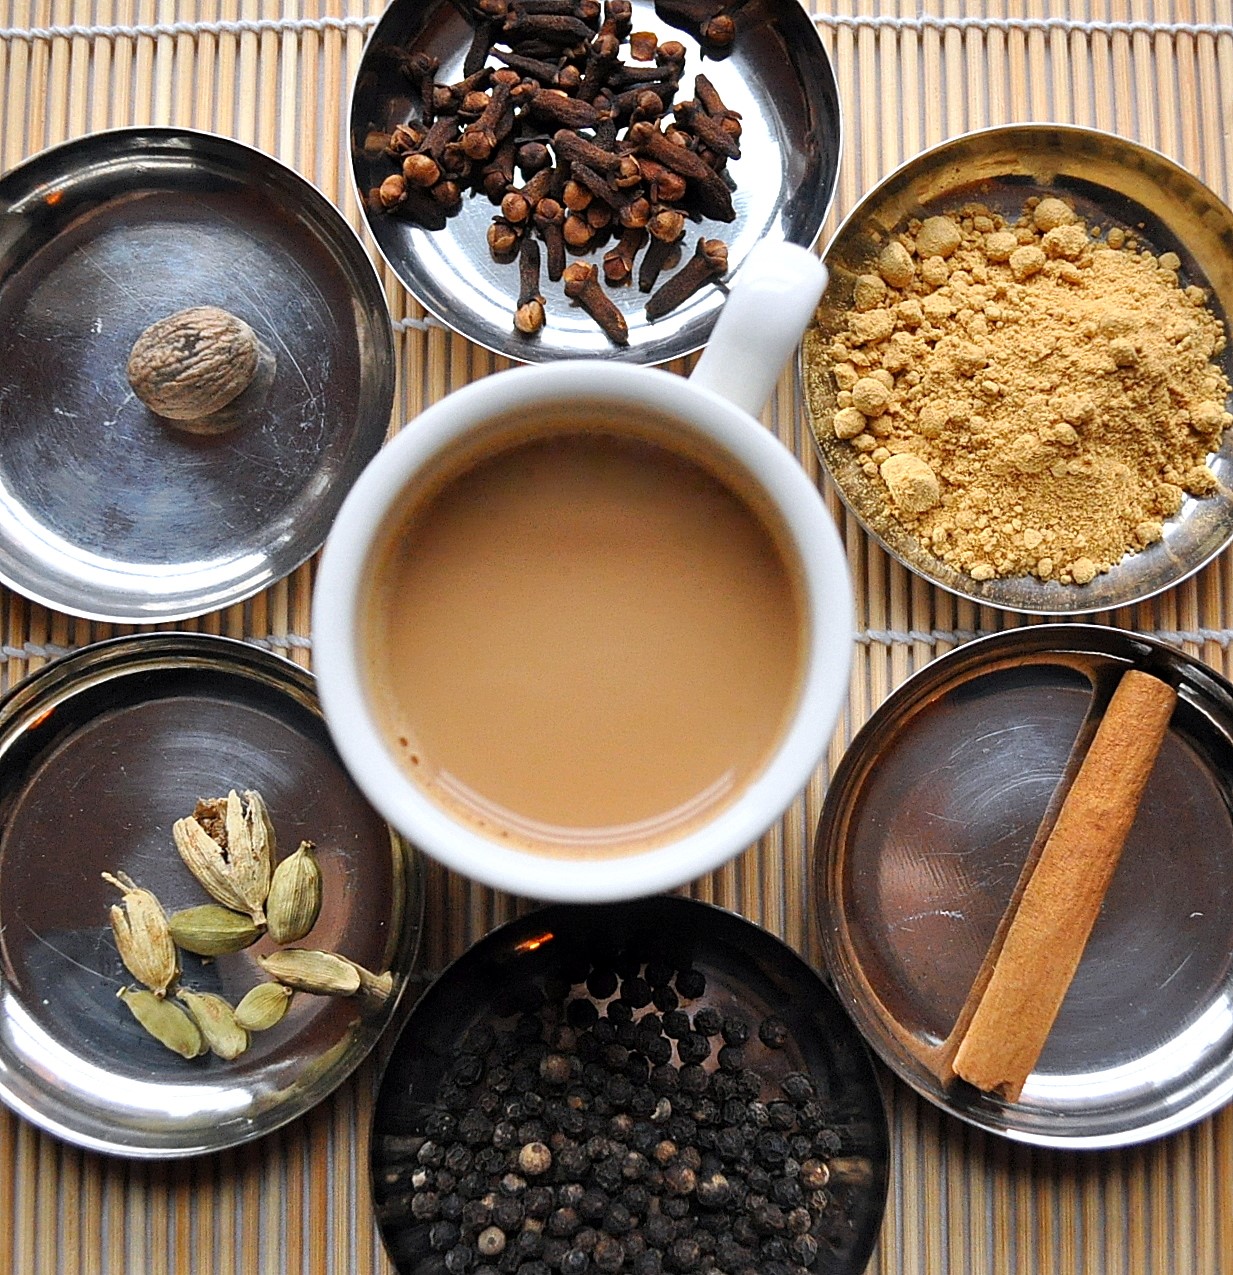 Пряный предложения. Чай индийский "масала". Чай со специями - масала. Пряный чай масала. Пуэр масала.